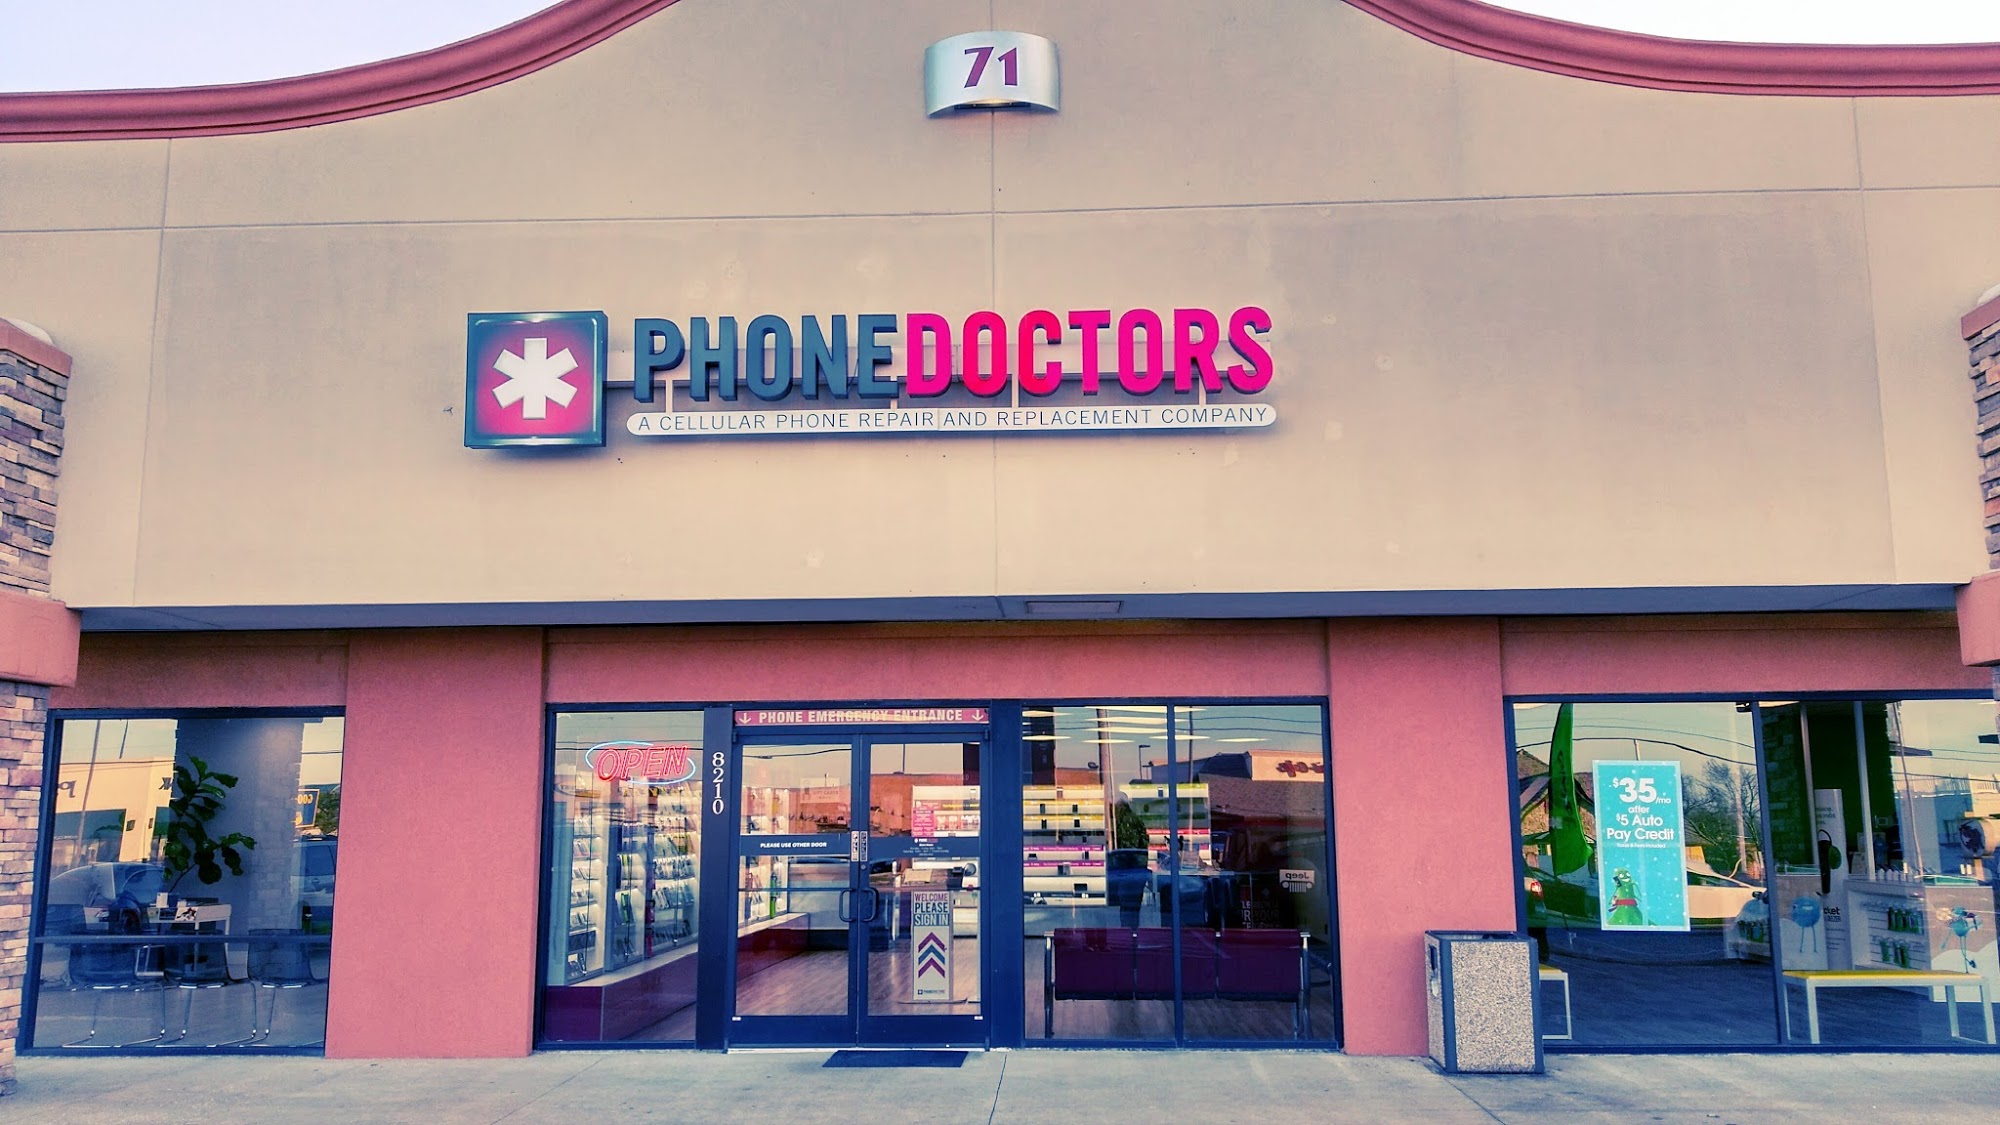 PHONE DOCTORS | iPhone & Cell Phone Repair of Tulsa 71st Memorial